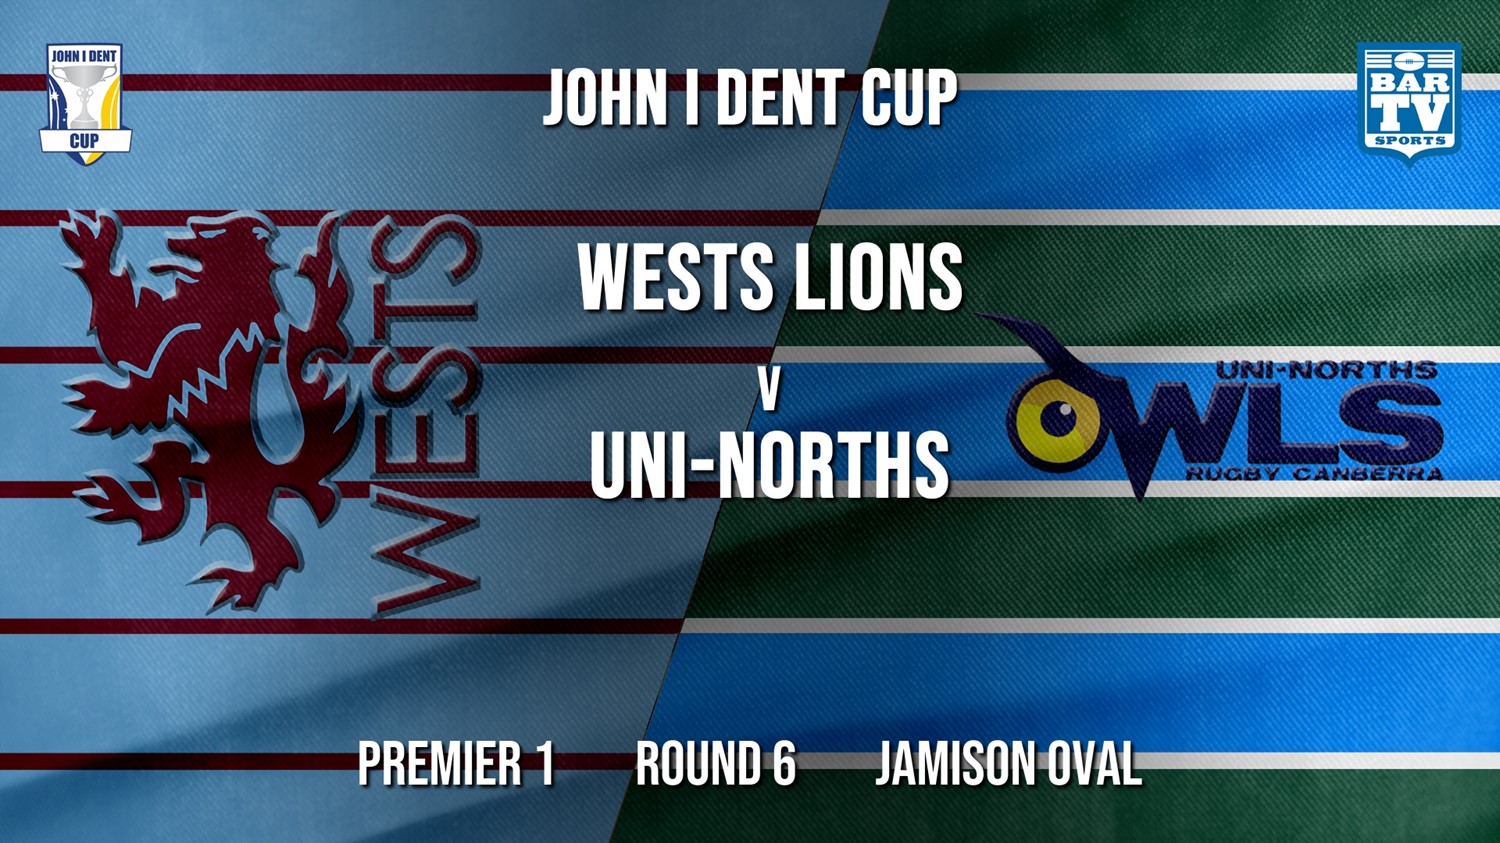 John I Dent Round 6 - Premier 1 - Wests Lions v UNI-Norths Minigame Slate Image